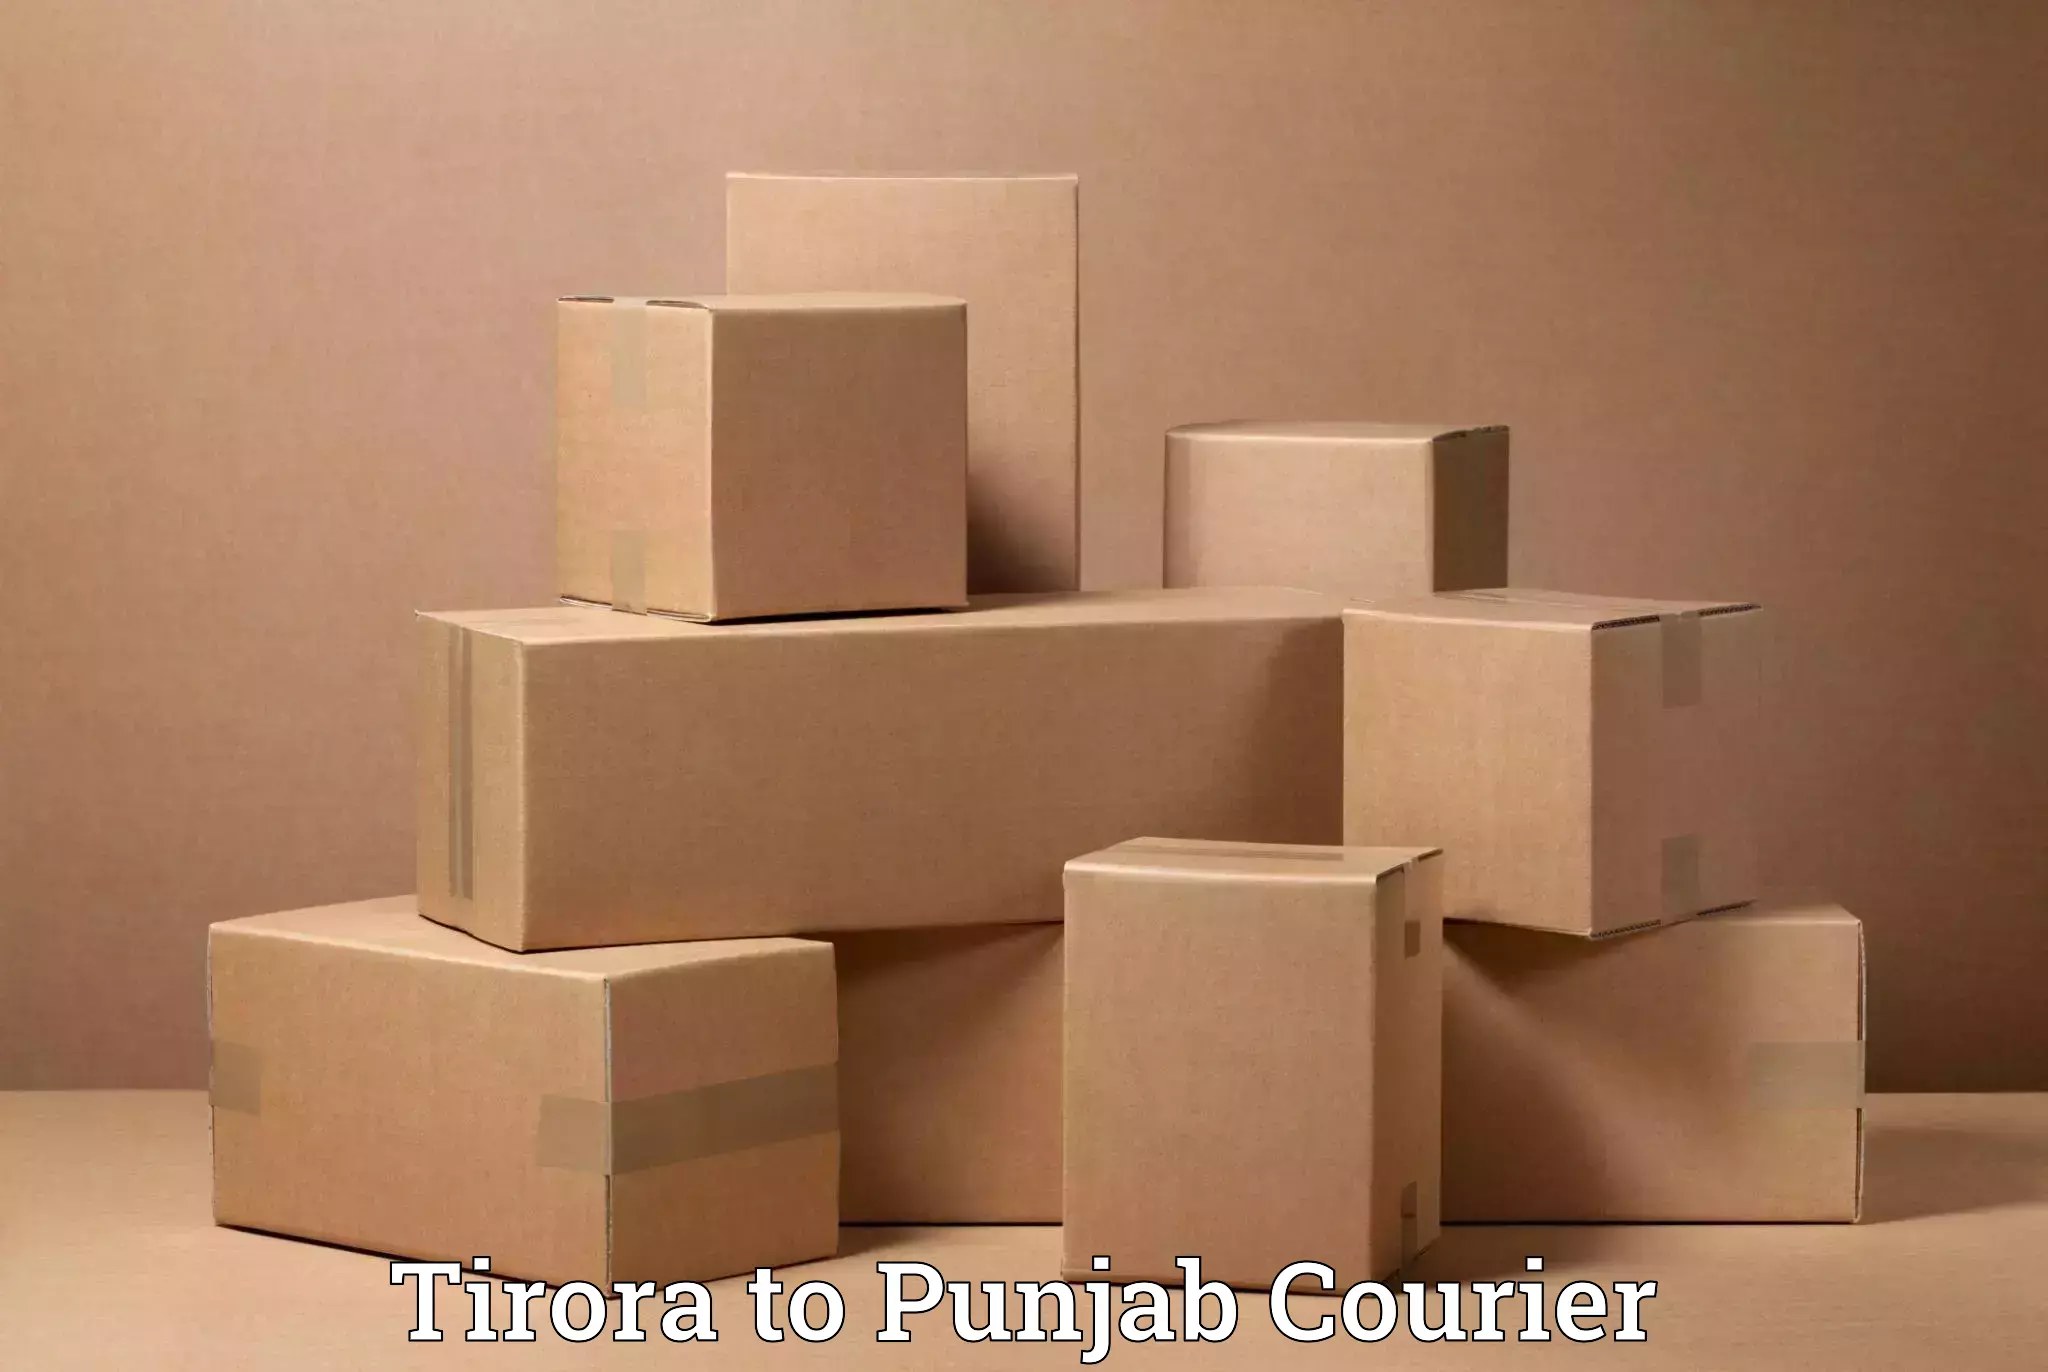 Furniture transport experts Tirora to Punjab